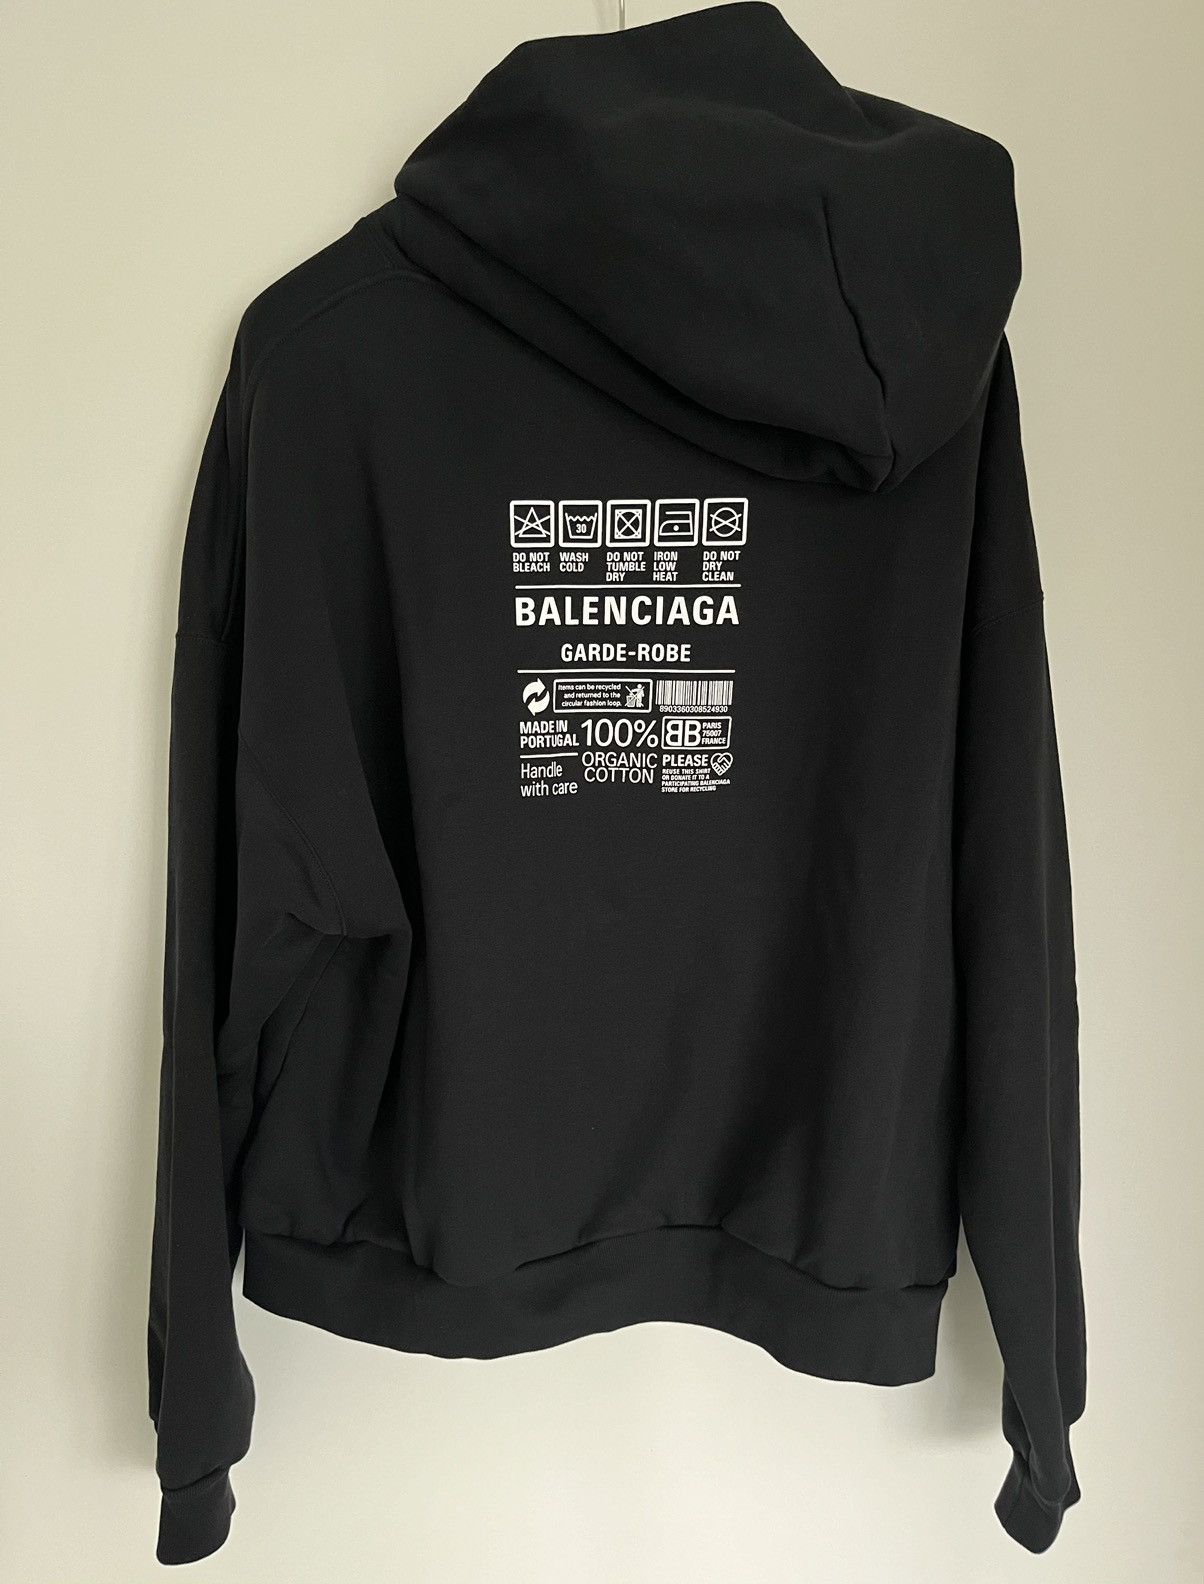 Balenciaga Balenciaga Garde-Robe Care Label Hoodie | Grailed